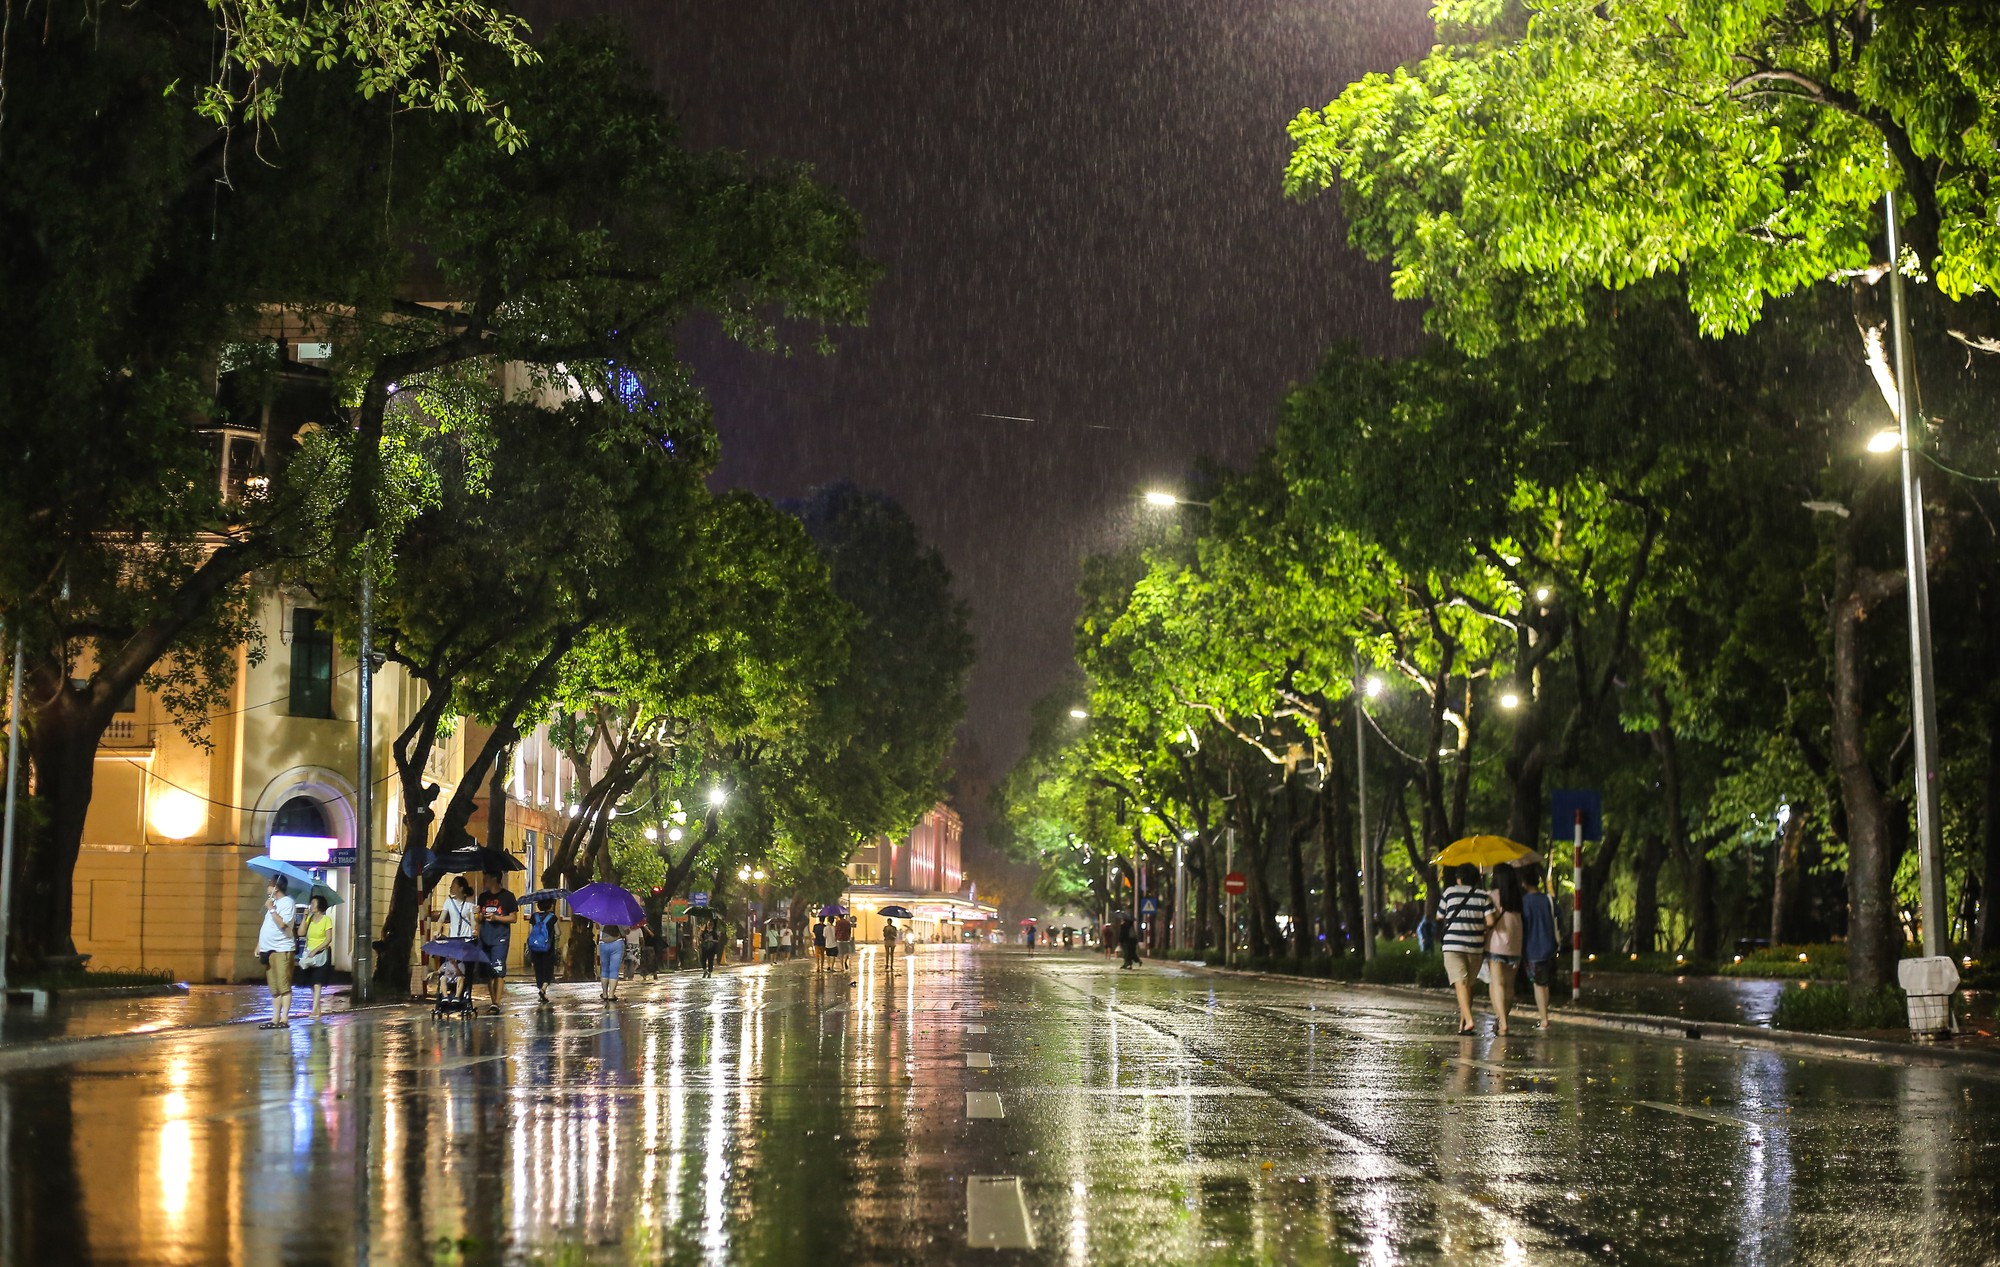 Hình ảnh mưa đêm buồn đẹp đầy cảm xúc phù hợp với tâm trạng của bạn